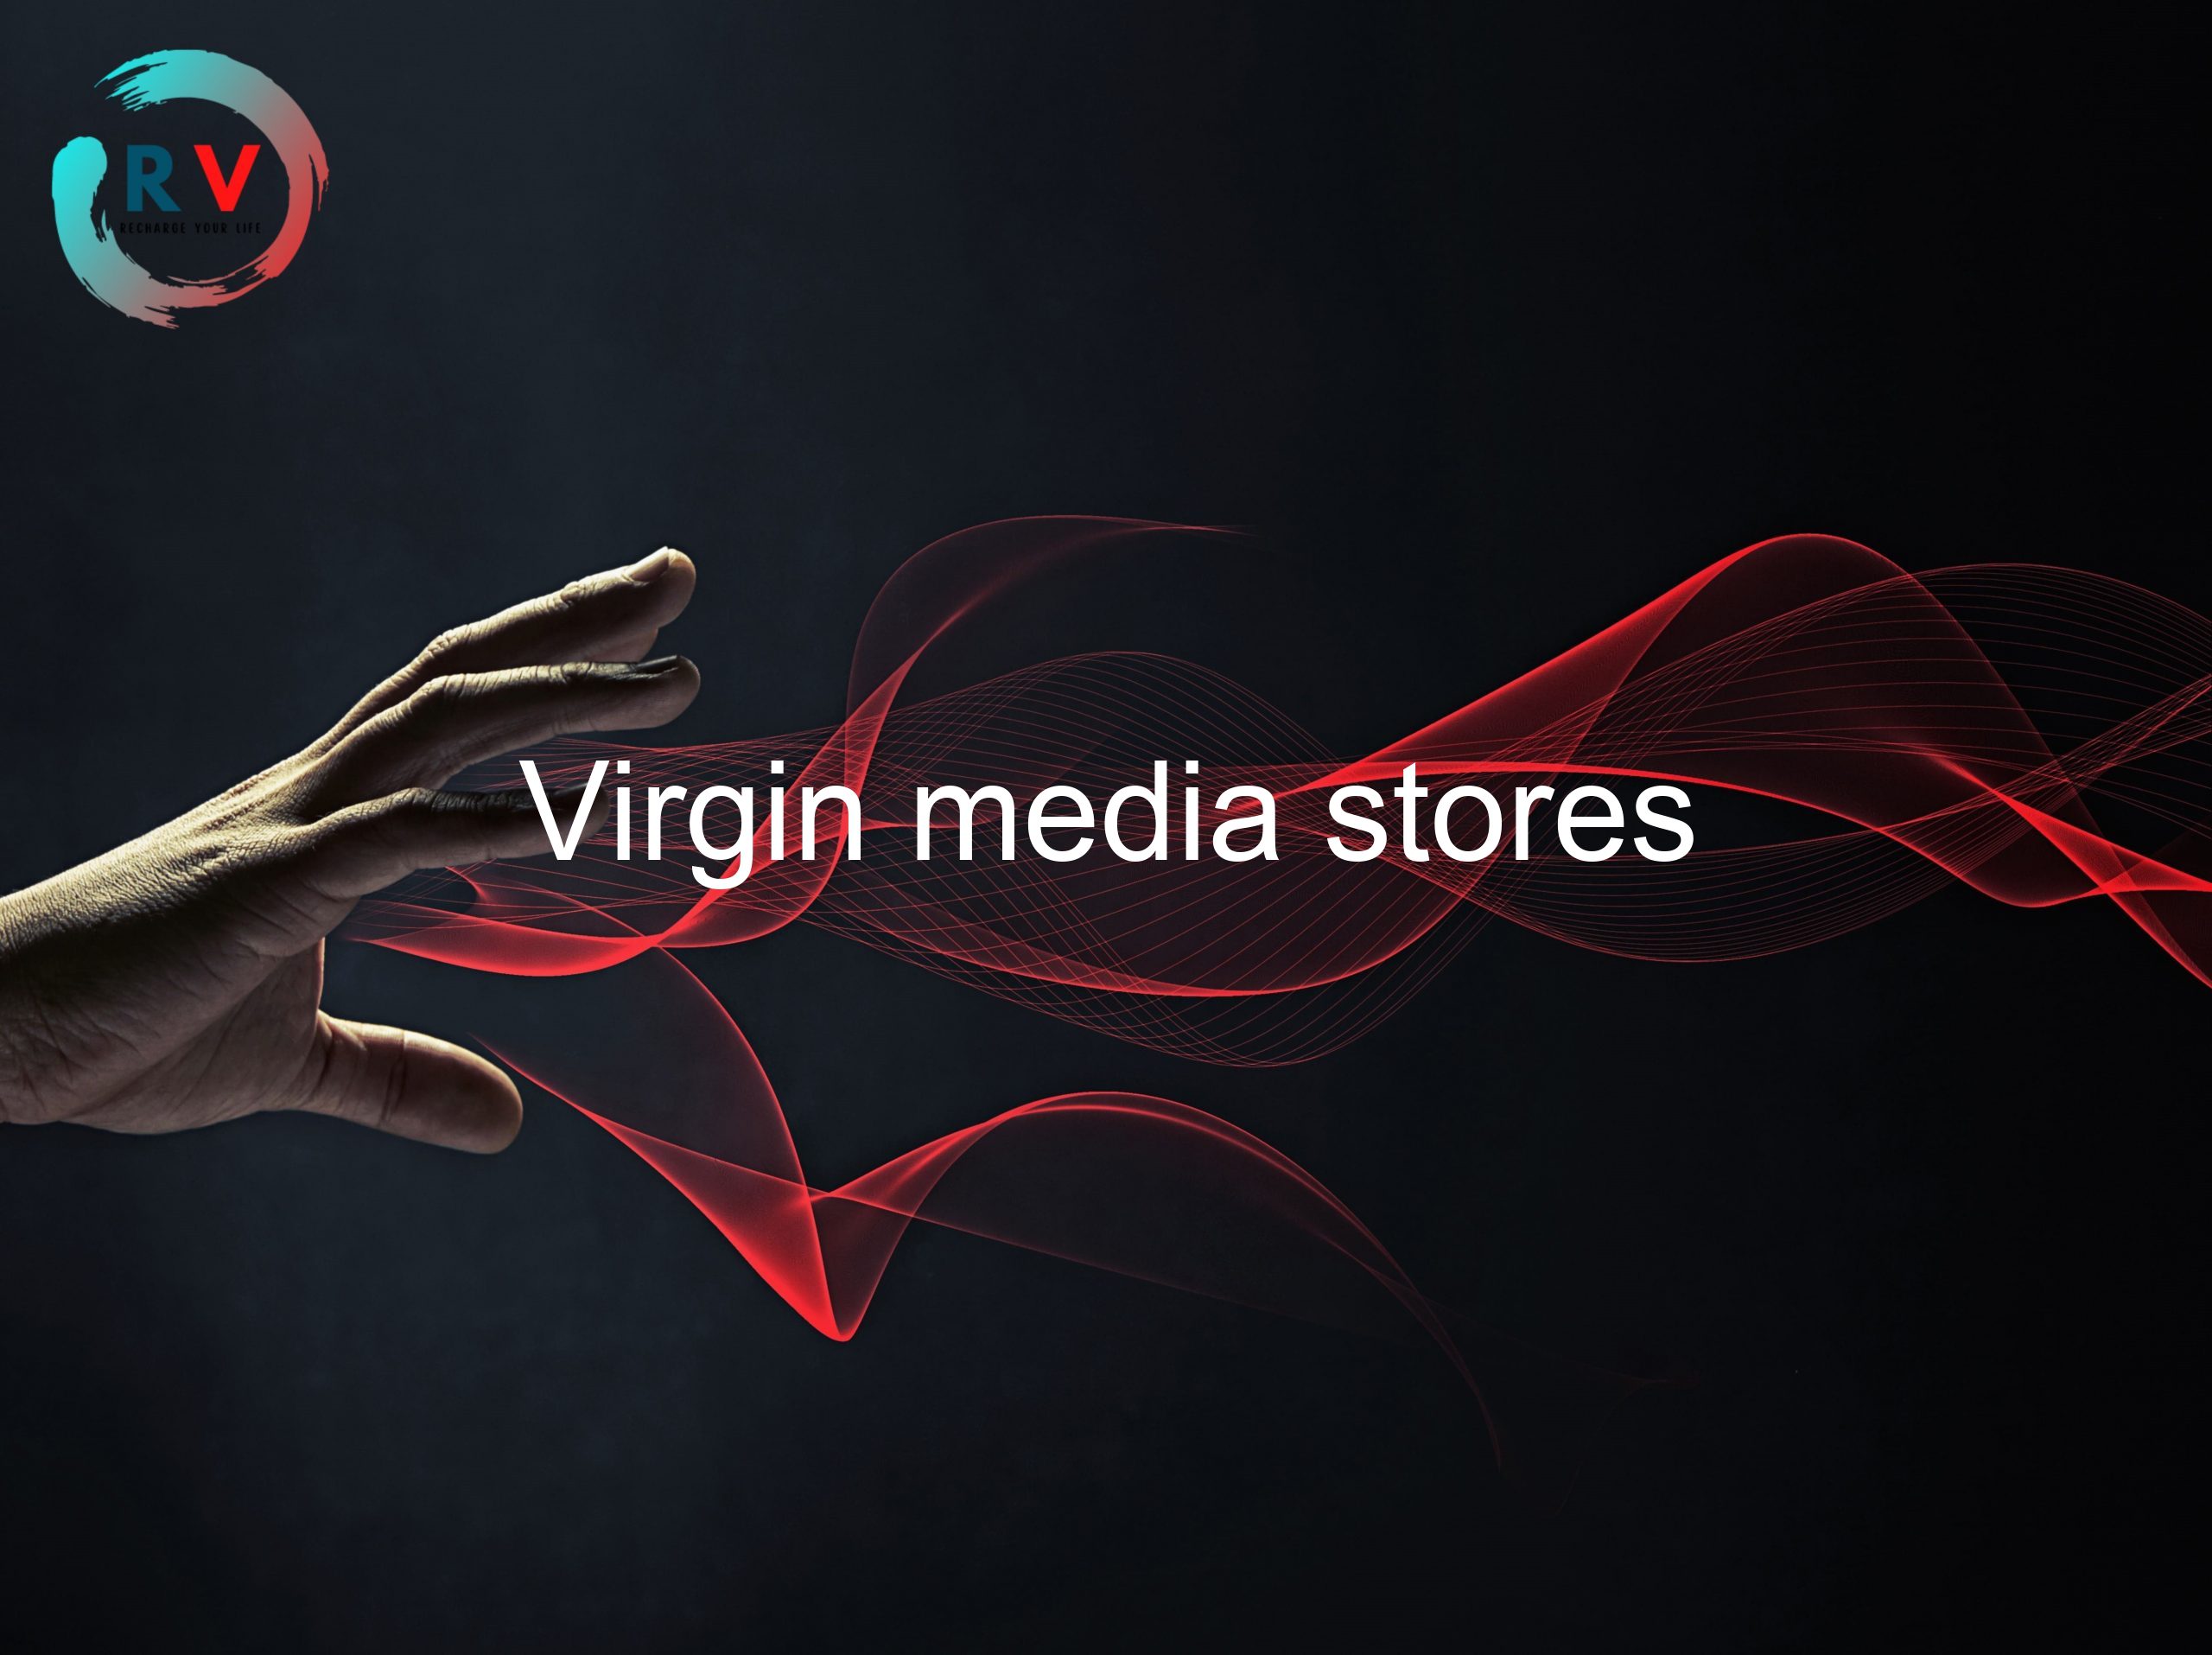 Virgin media stores